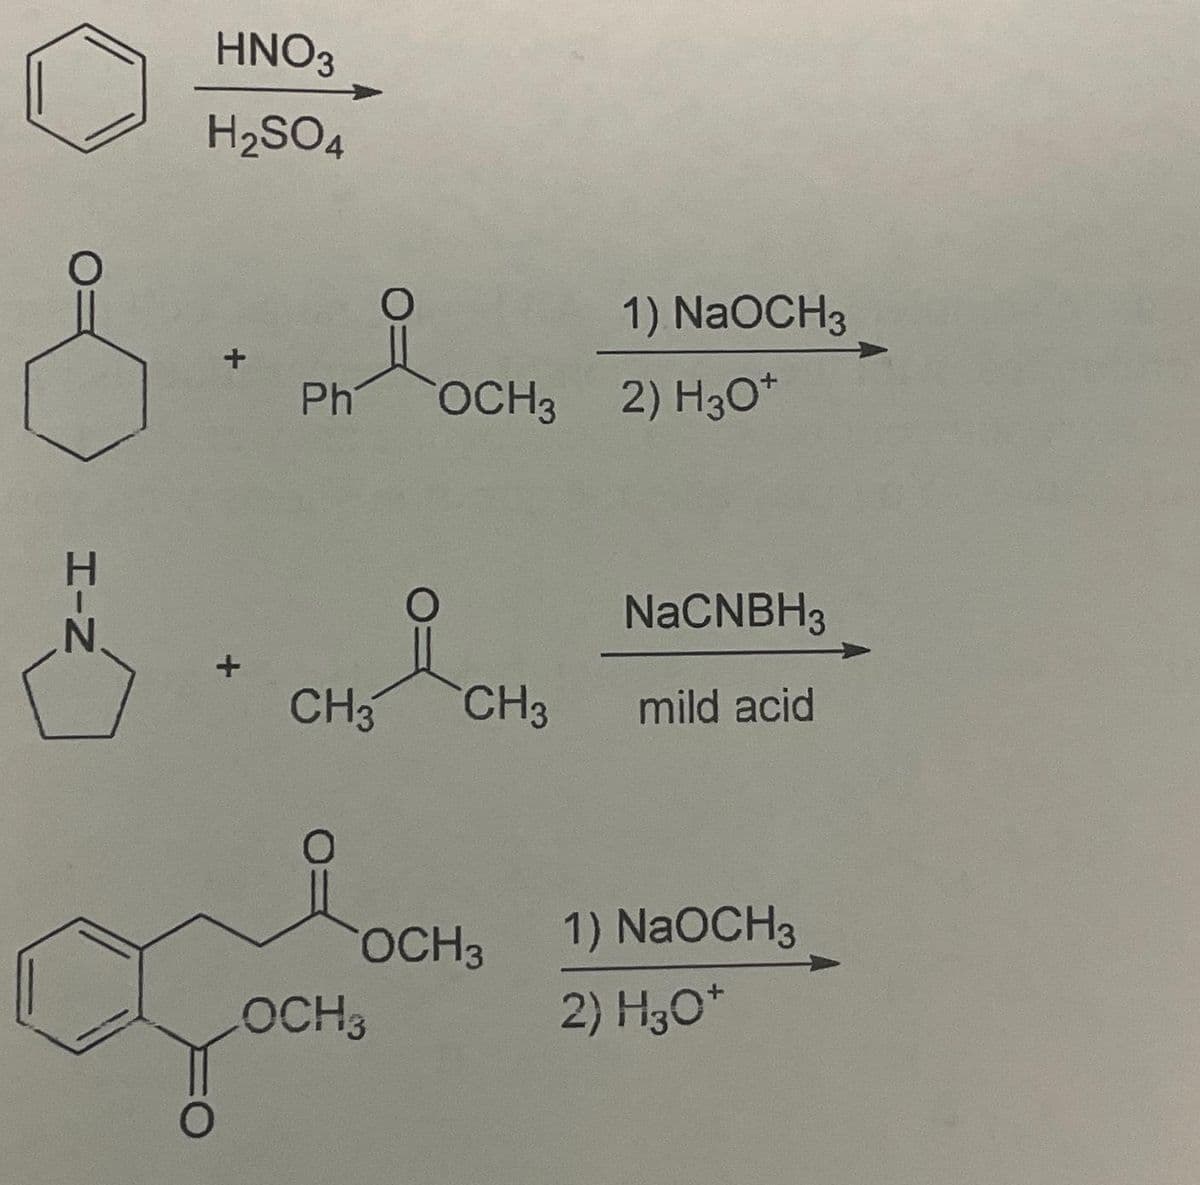 HNO3
H₂SO4
+
8.
H-N
+
Ph
O
CH3
OCH 3
OCH3 2) H30*
CH3
OCH 3
1) NaOCH3
NaCNBH3
mild acid
1) NaOCH3
2) H3O+